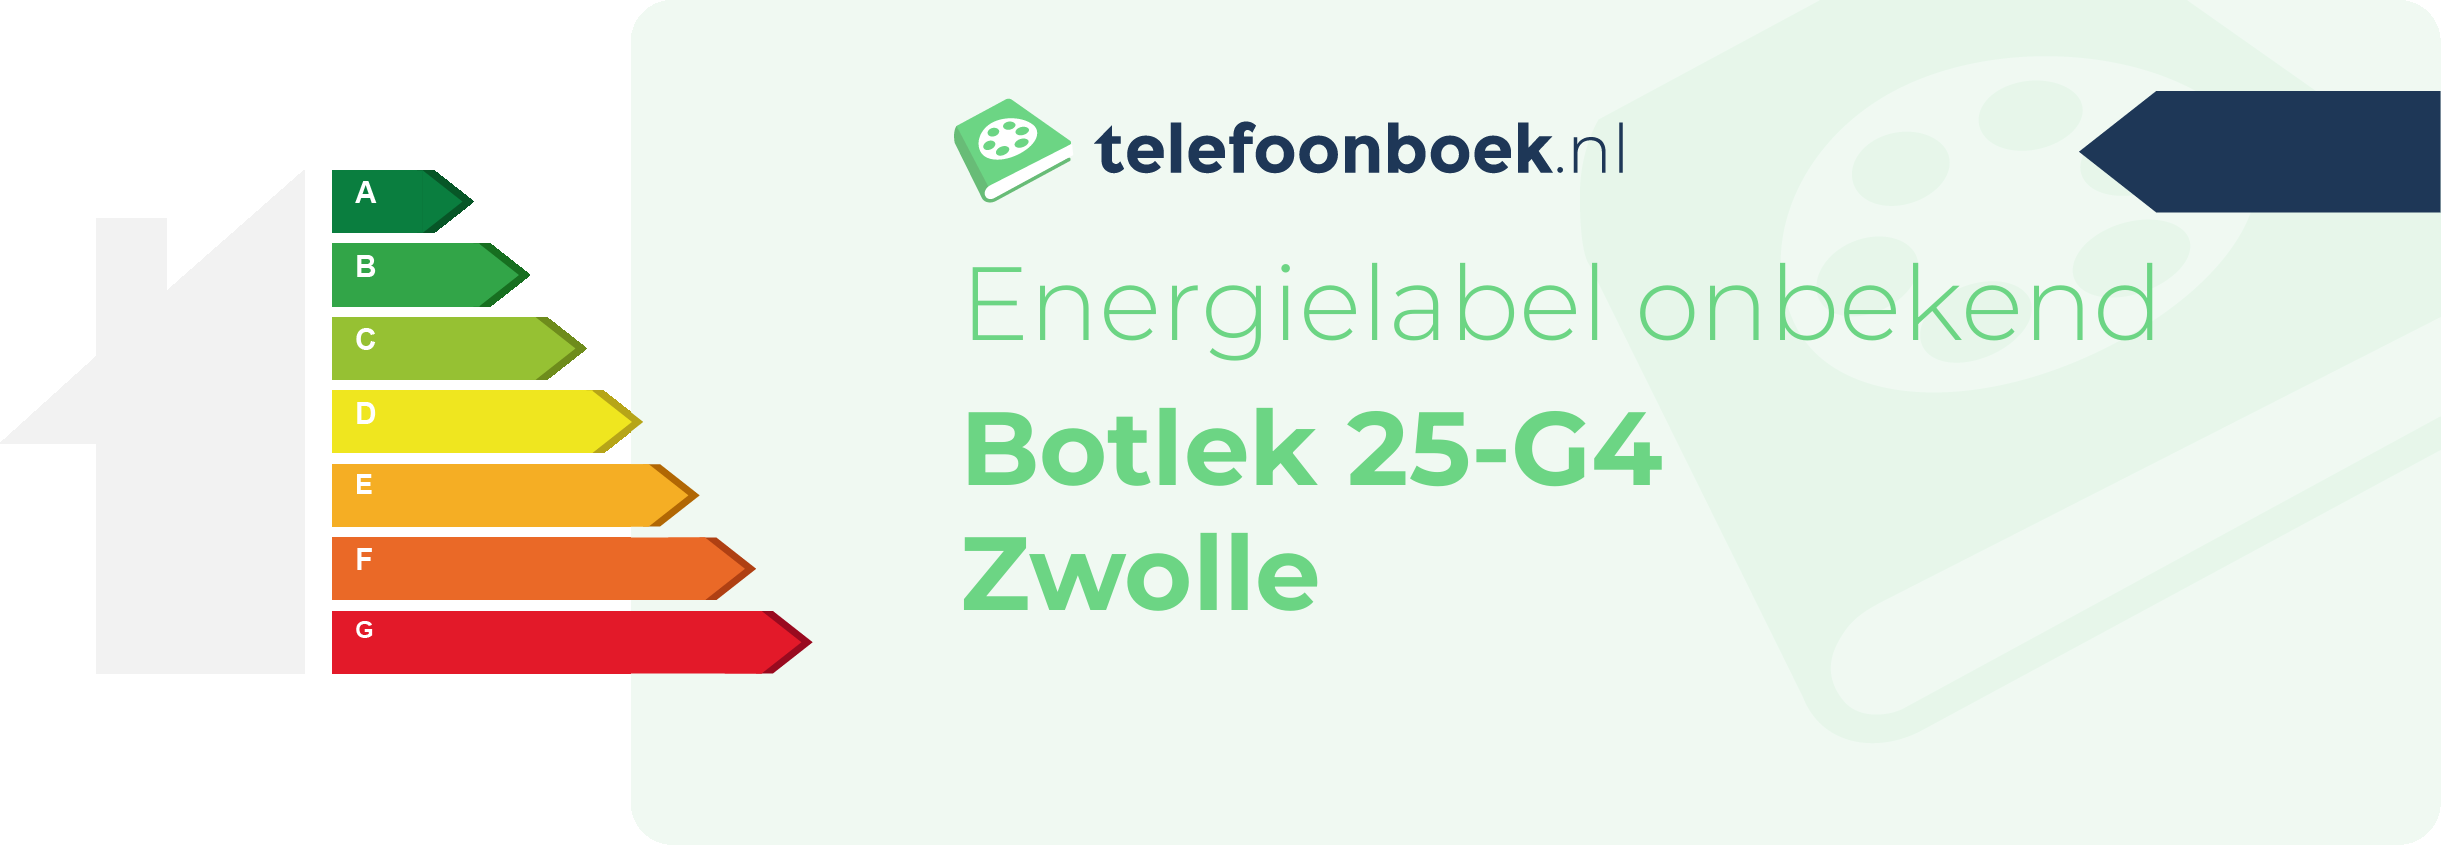 Energielabel Botlek 25-G4 Zwolle